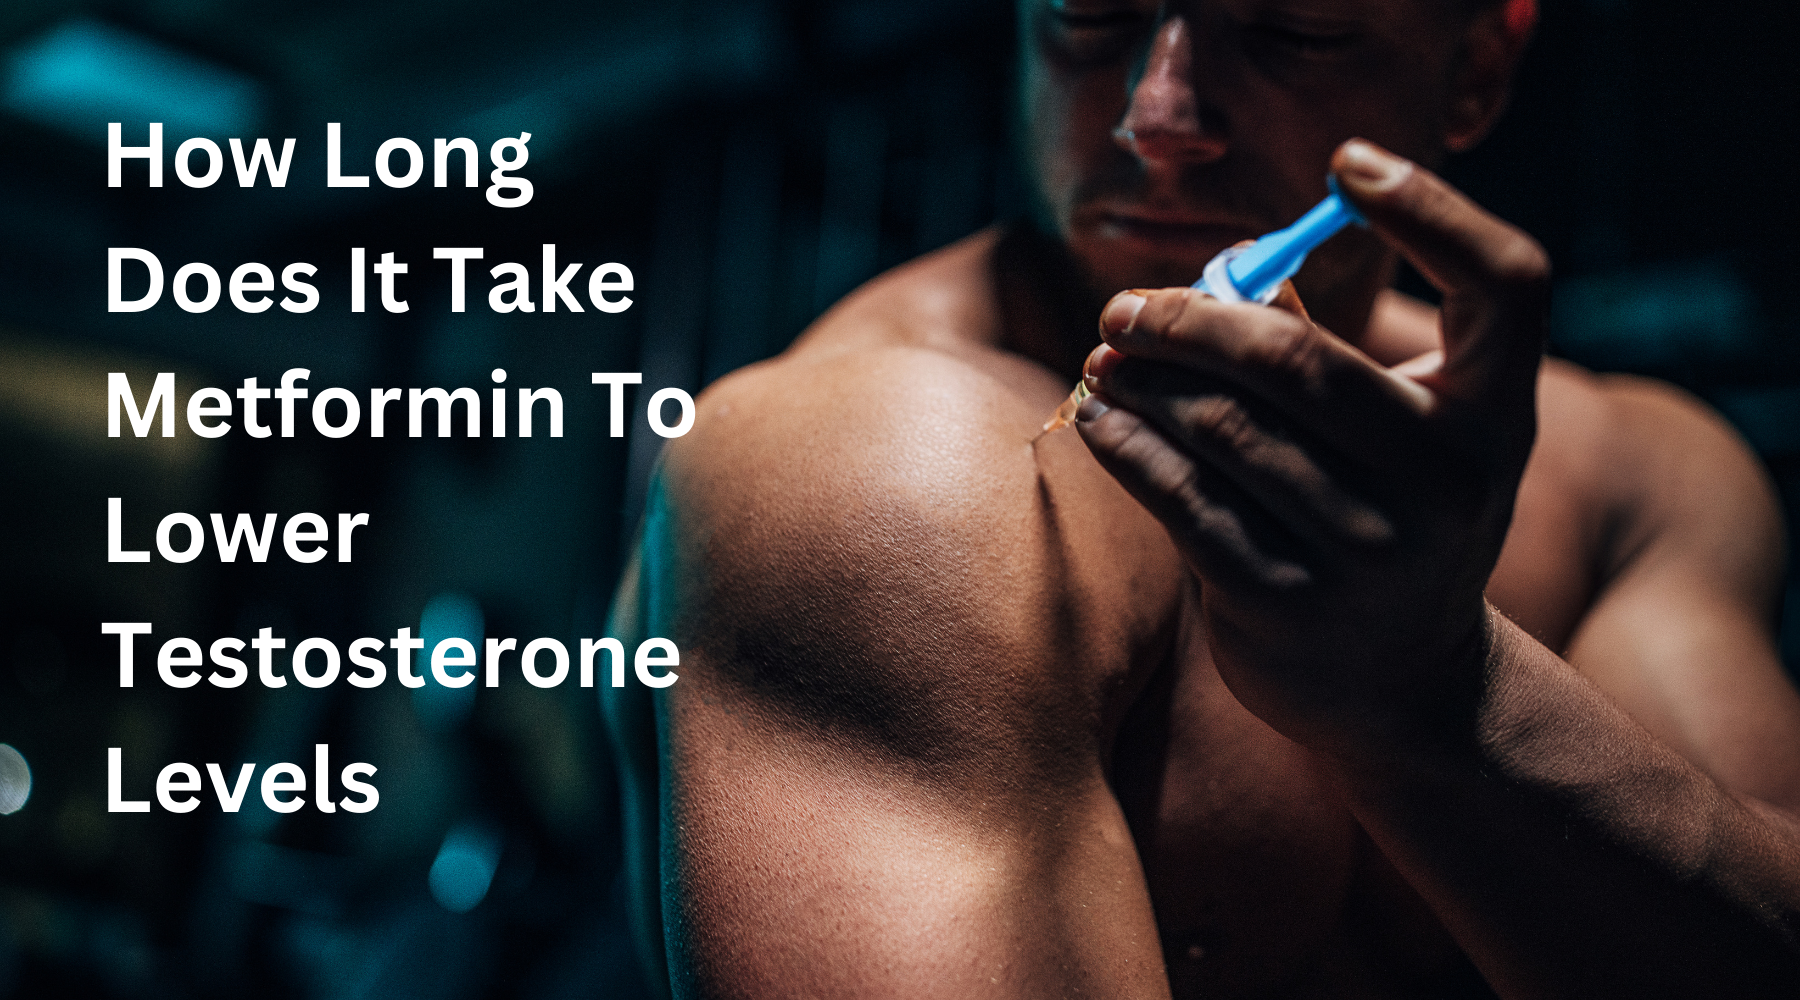 كم من الوقت يستغرق الميتفورمين لخفض مستويات هرمون التستوستيرون؟